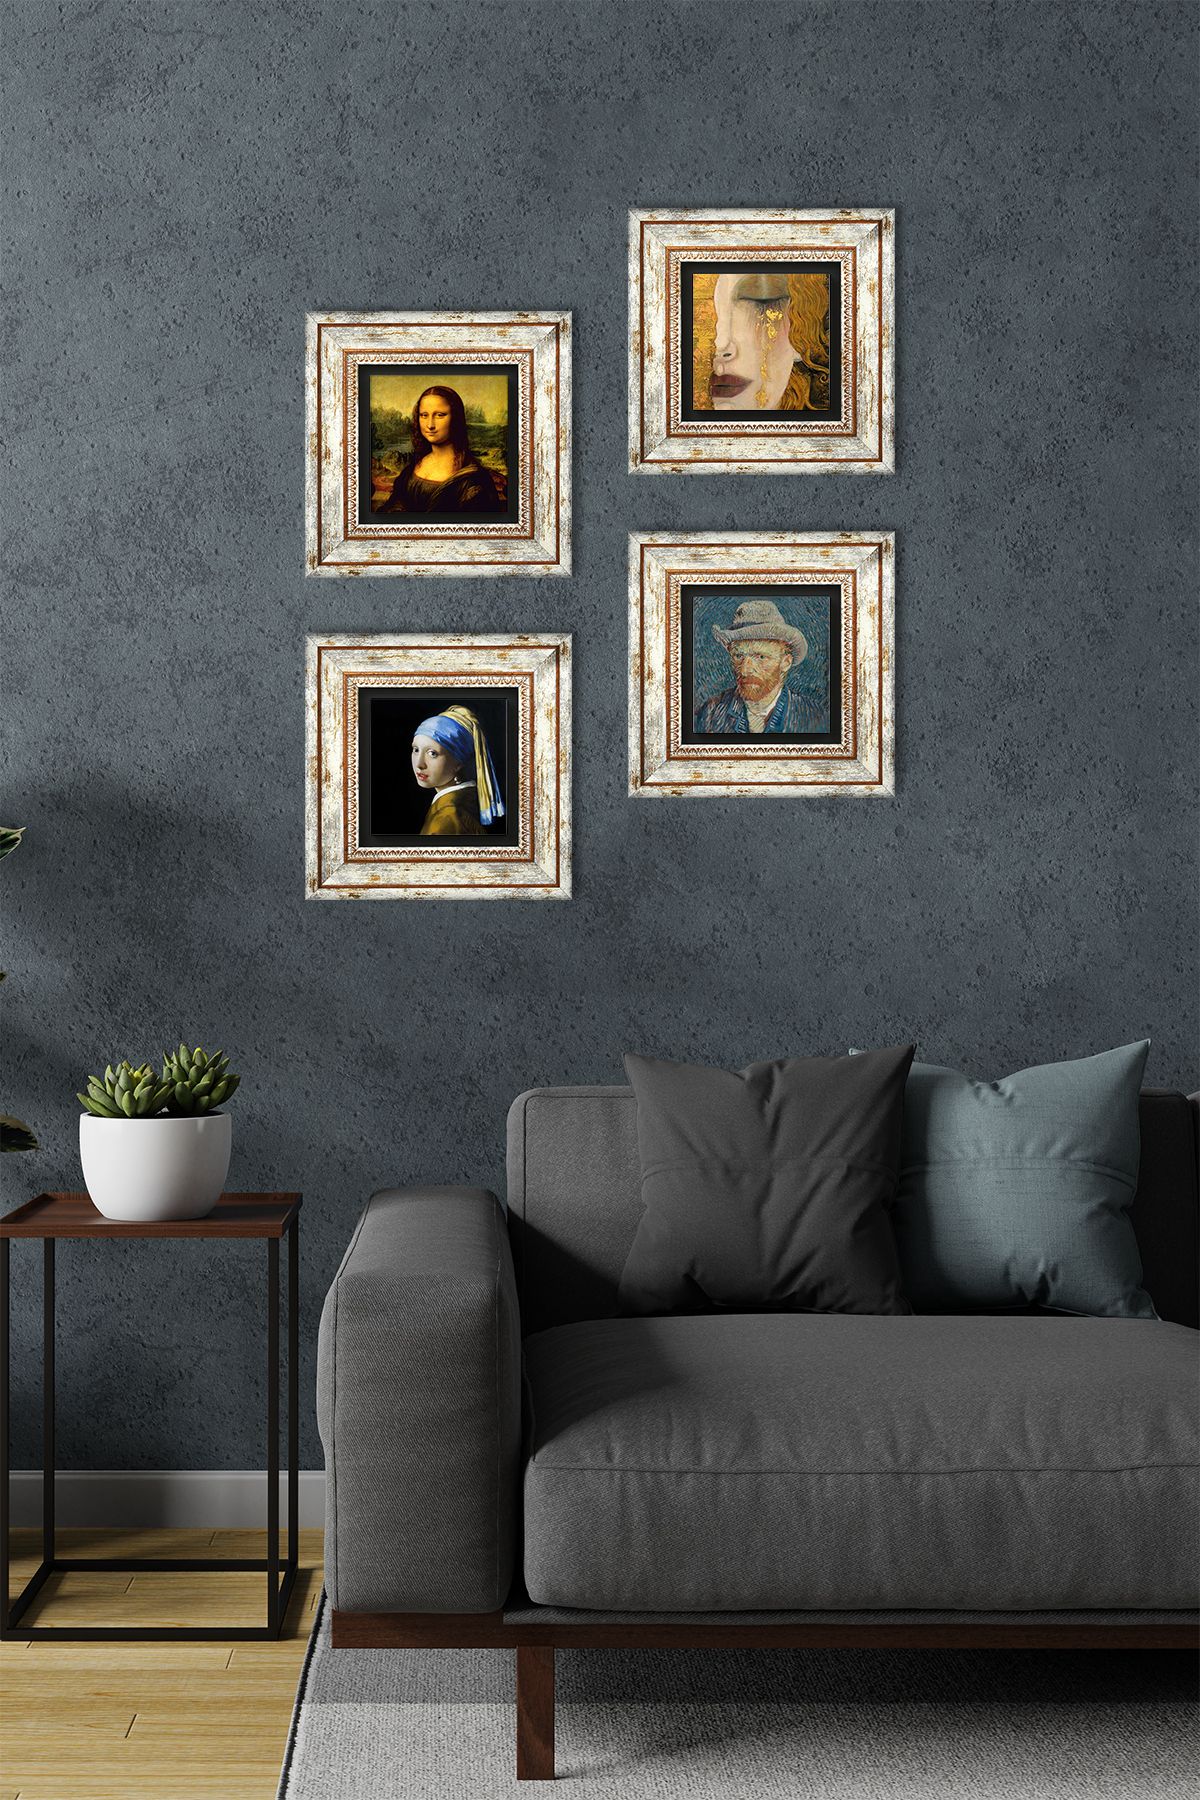 Pinecone Inci Küpeli Kız, Van Gogh, Gustav Klimt, Leonardo Da Vinci Taş Duvar Tablosu Çerçeveli Duvar Dekoru